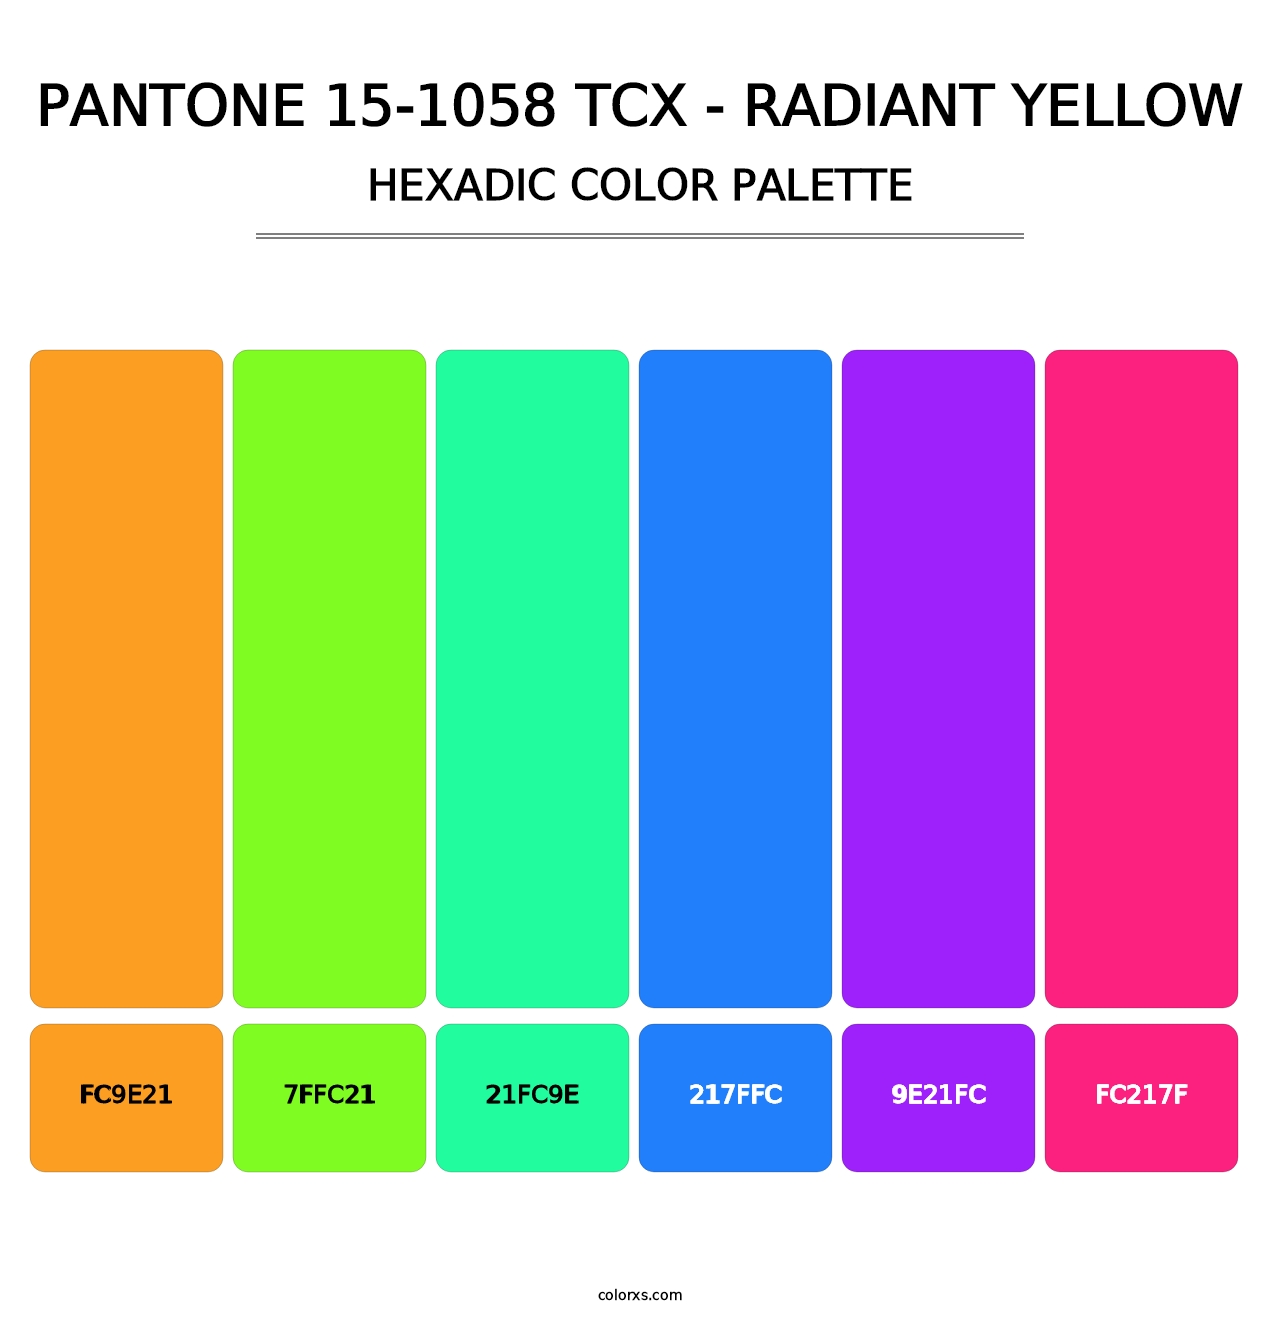 PANTONE 15-1058 TCX - Radiant Yellow - Hexadic Color Palette